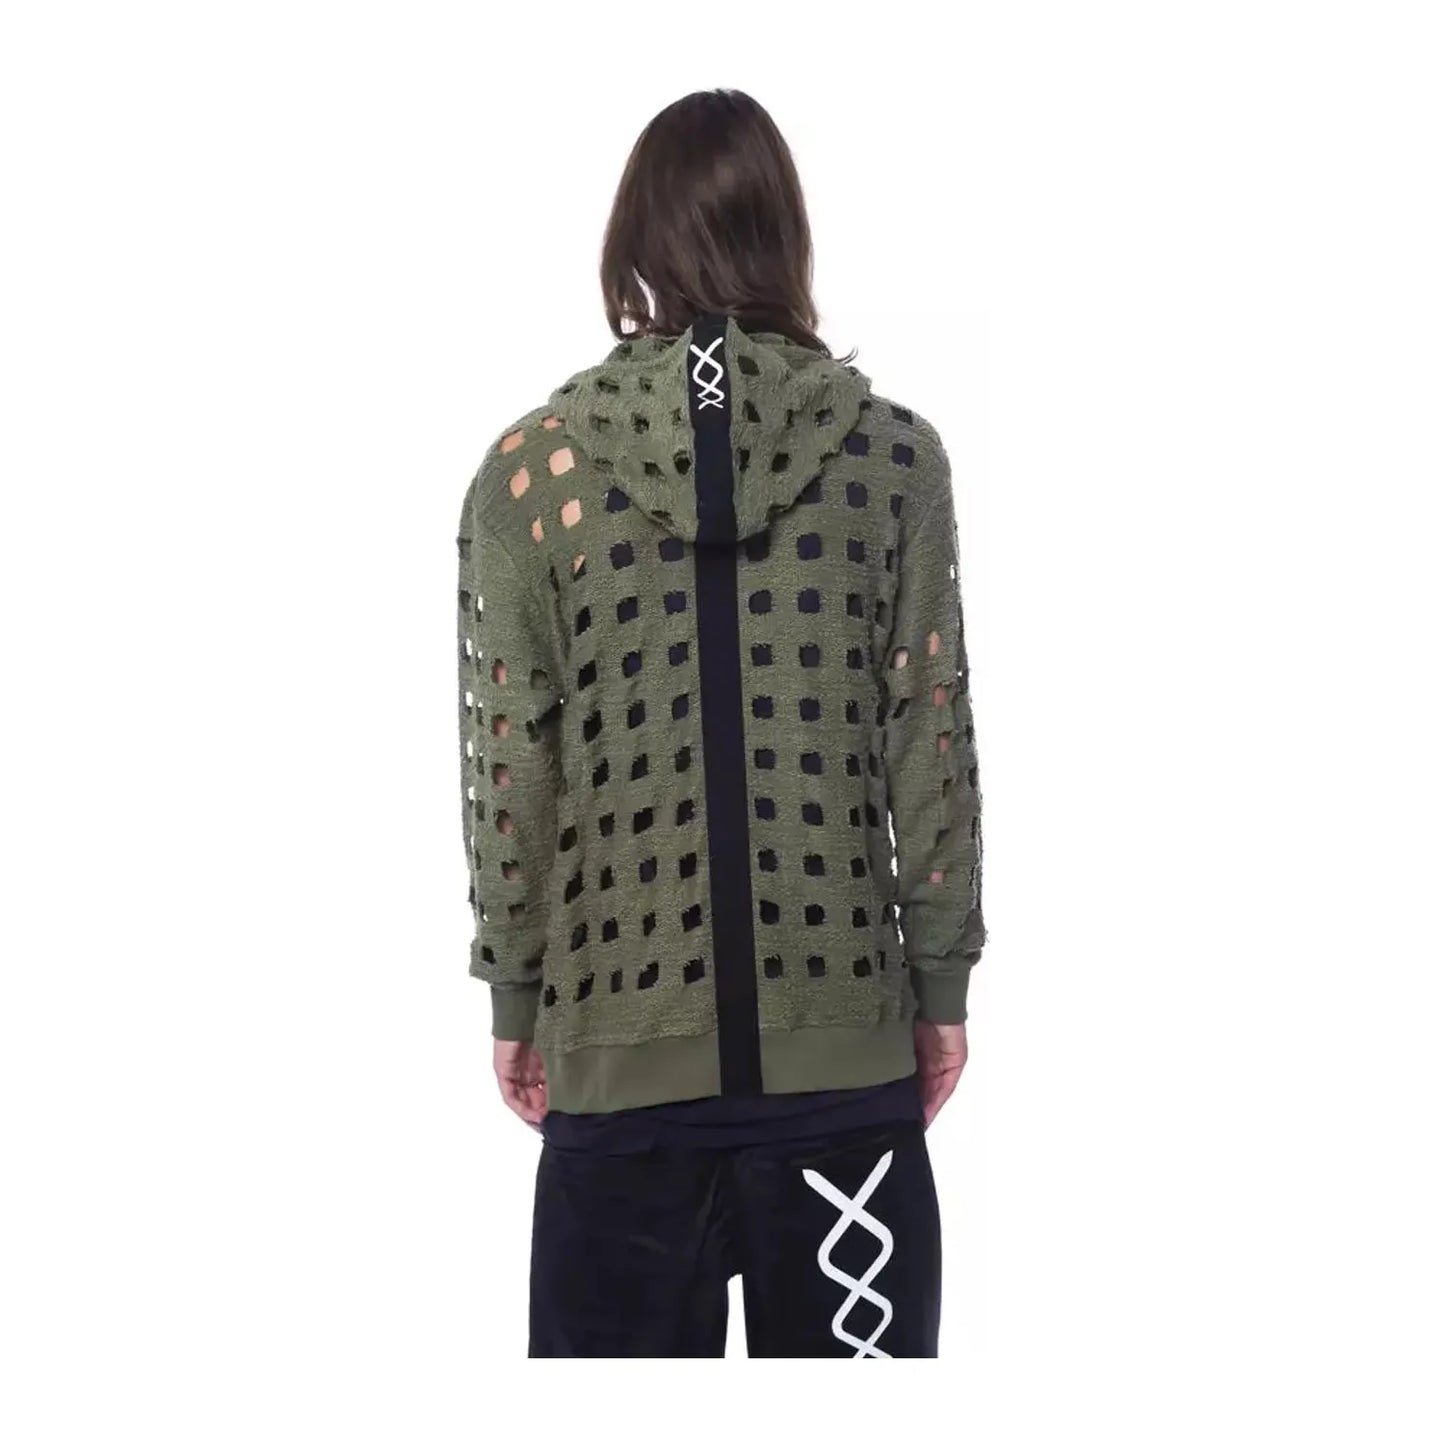 Nicolo Tonetto Oversized Hooded Fleece - Army Zip Comfort army-sweater-1